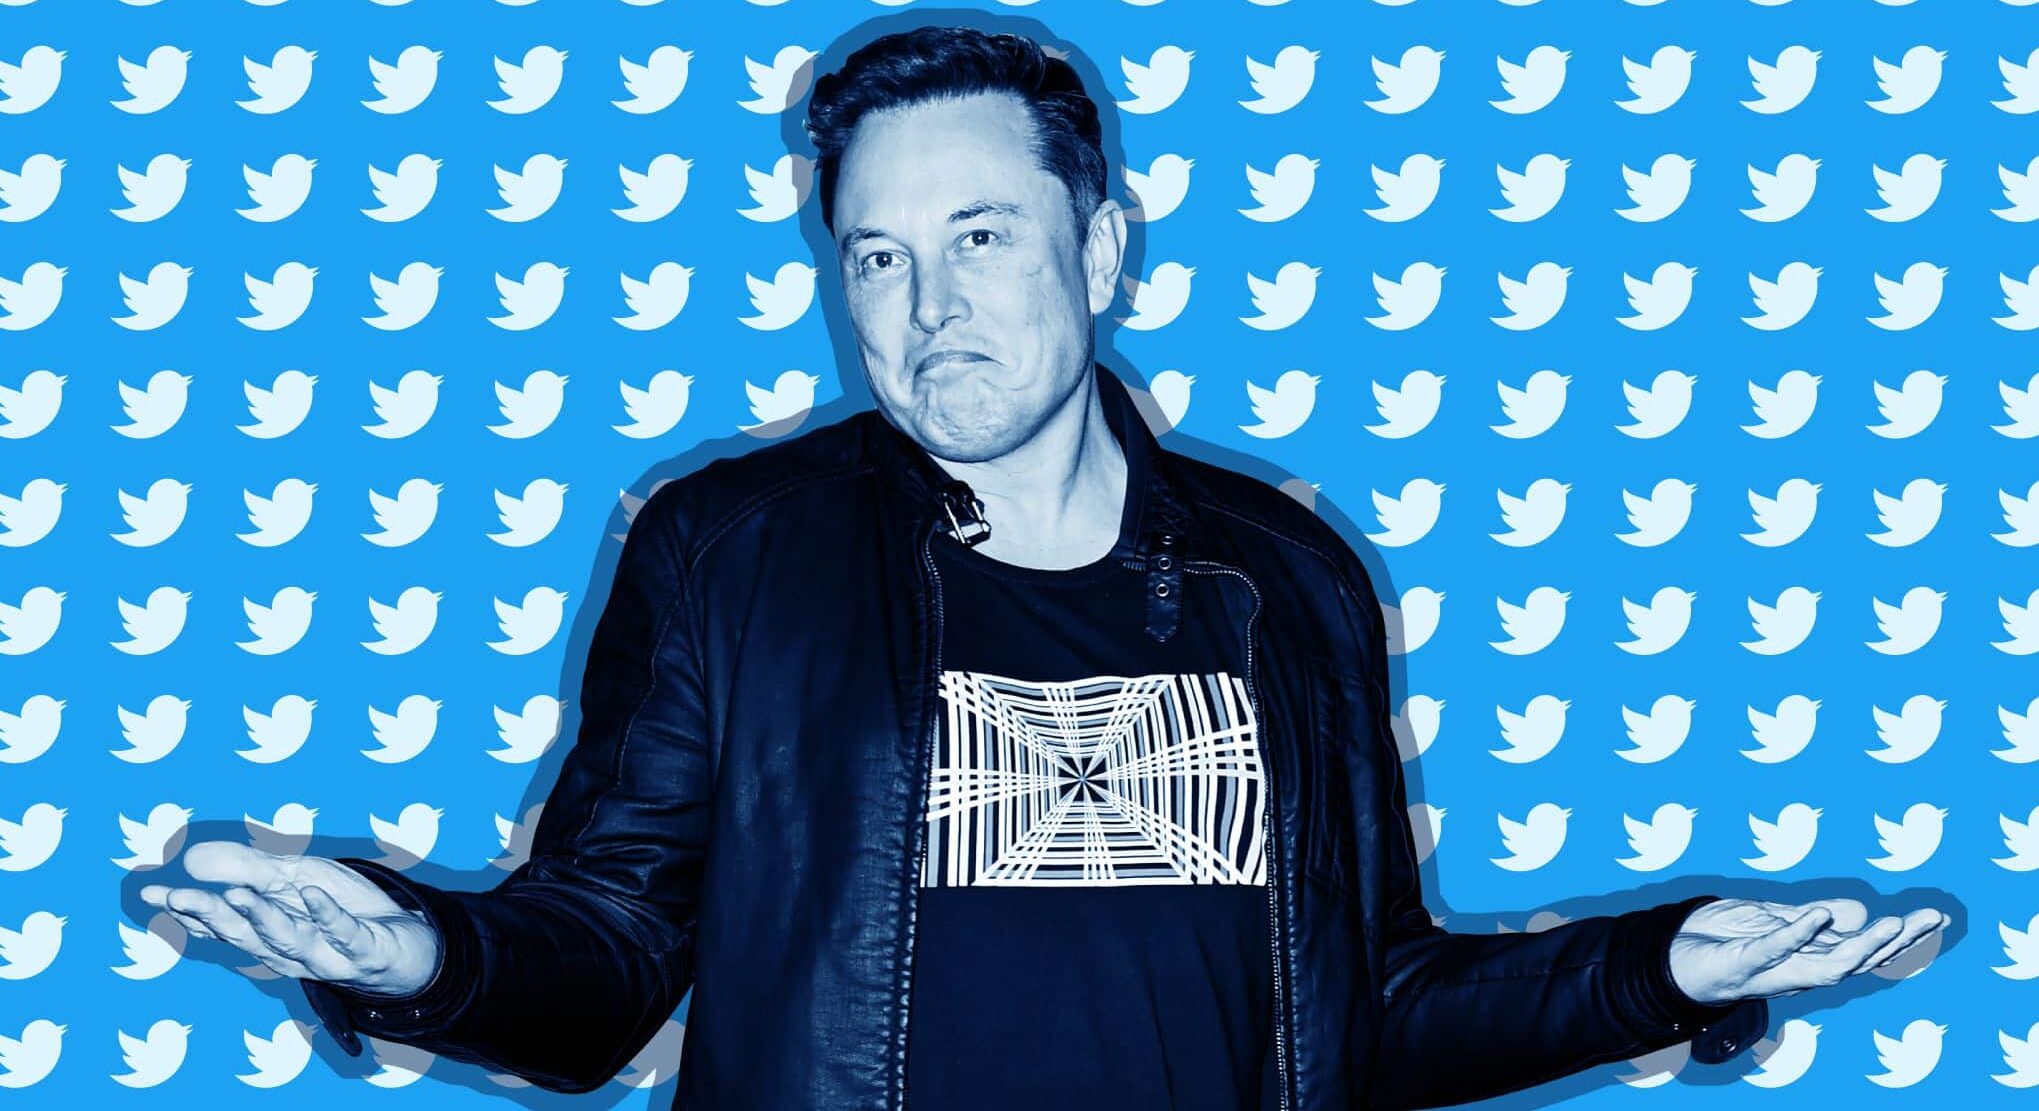 Elon Musk agrees to buy Twitter for $44 Billion